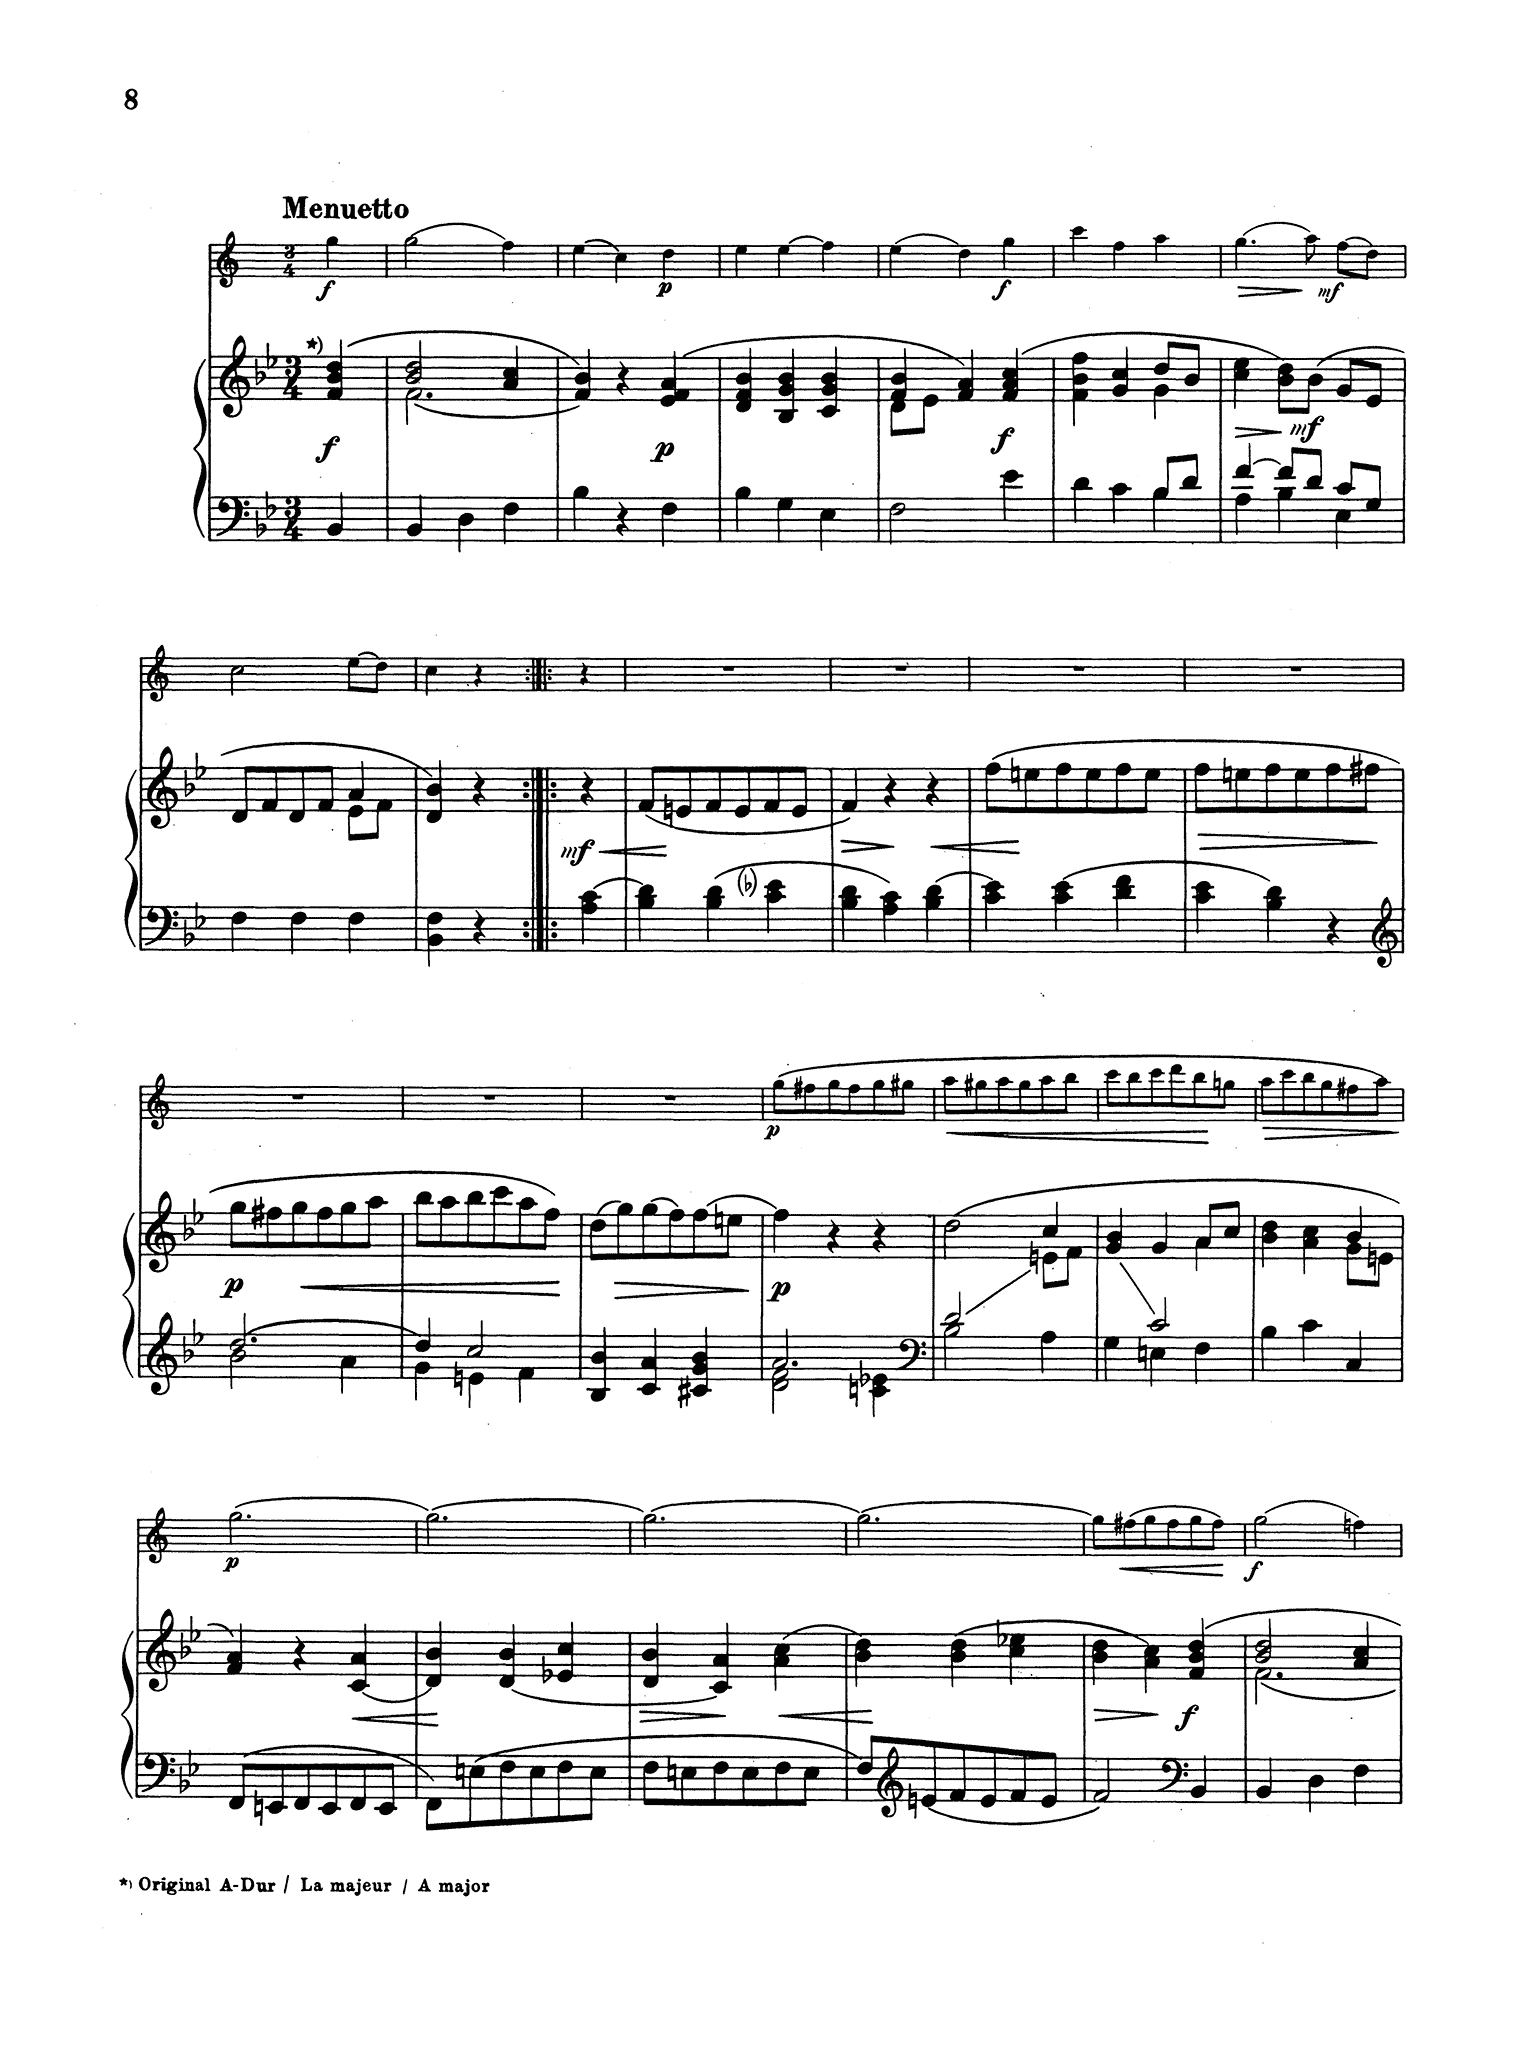 Mozart Quintet - Movement 3